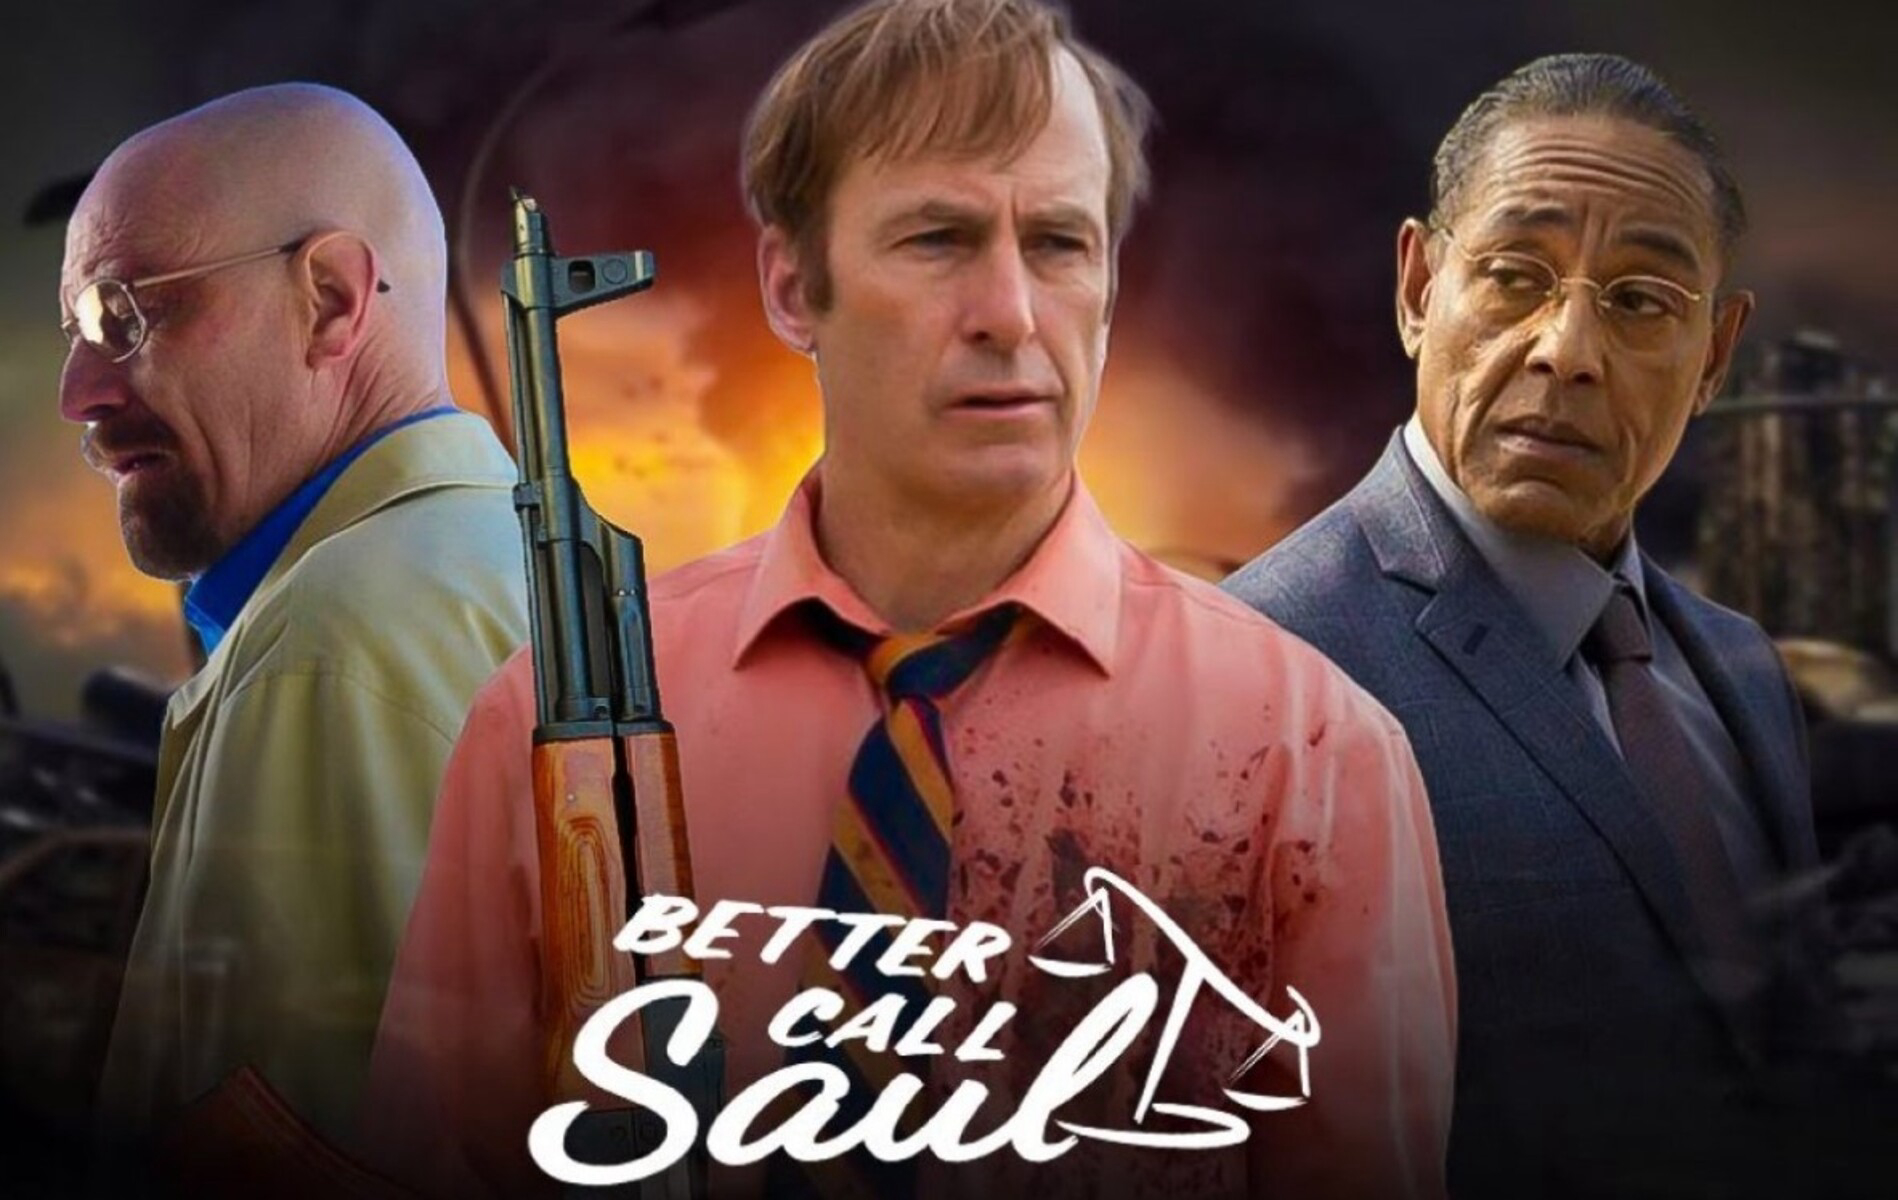 Xem Phim Hãy Gọi Cho Saul Phần 6 (Better Call Saul Season 6)